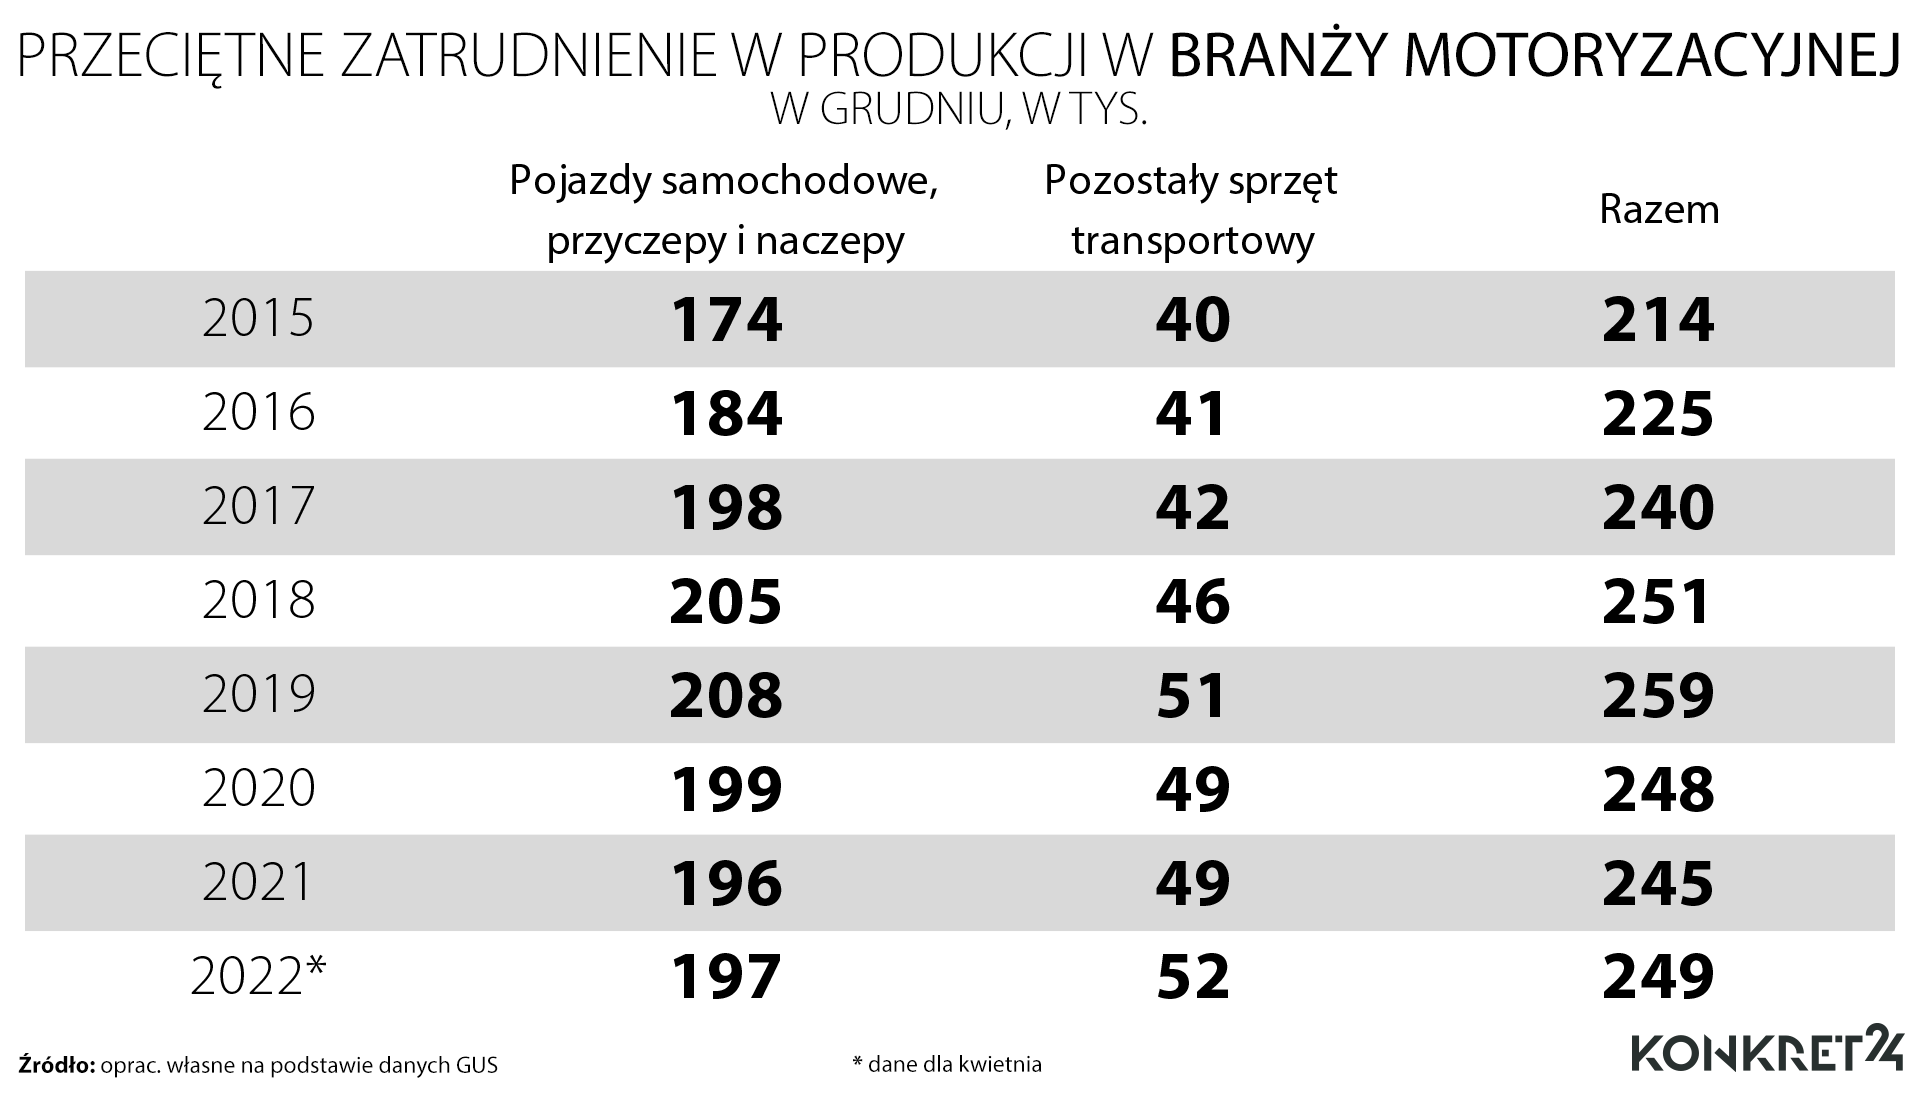 Przeciętne zatrudnienie w przemyśle motoryzacyjnym w Polsce 